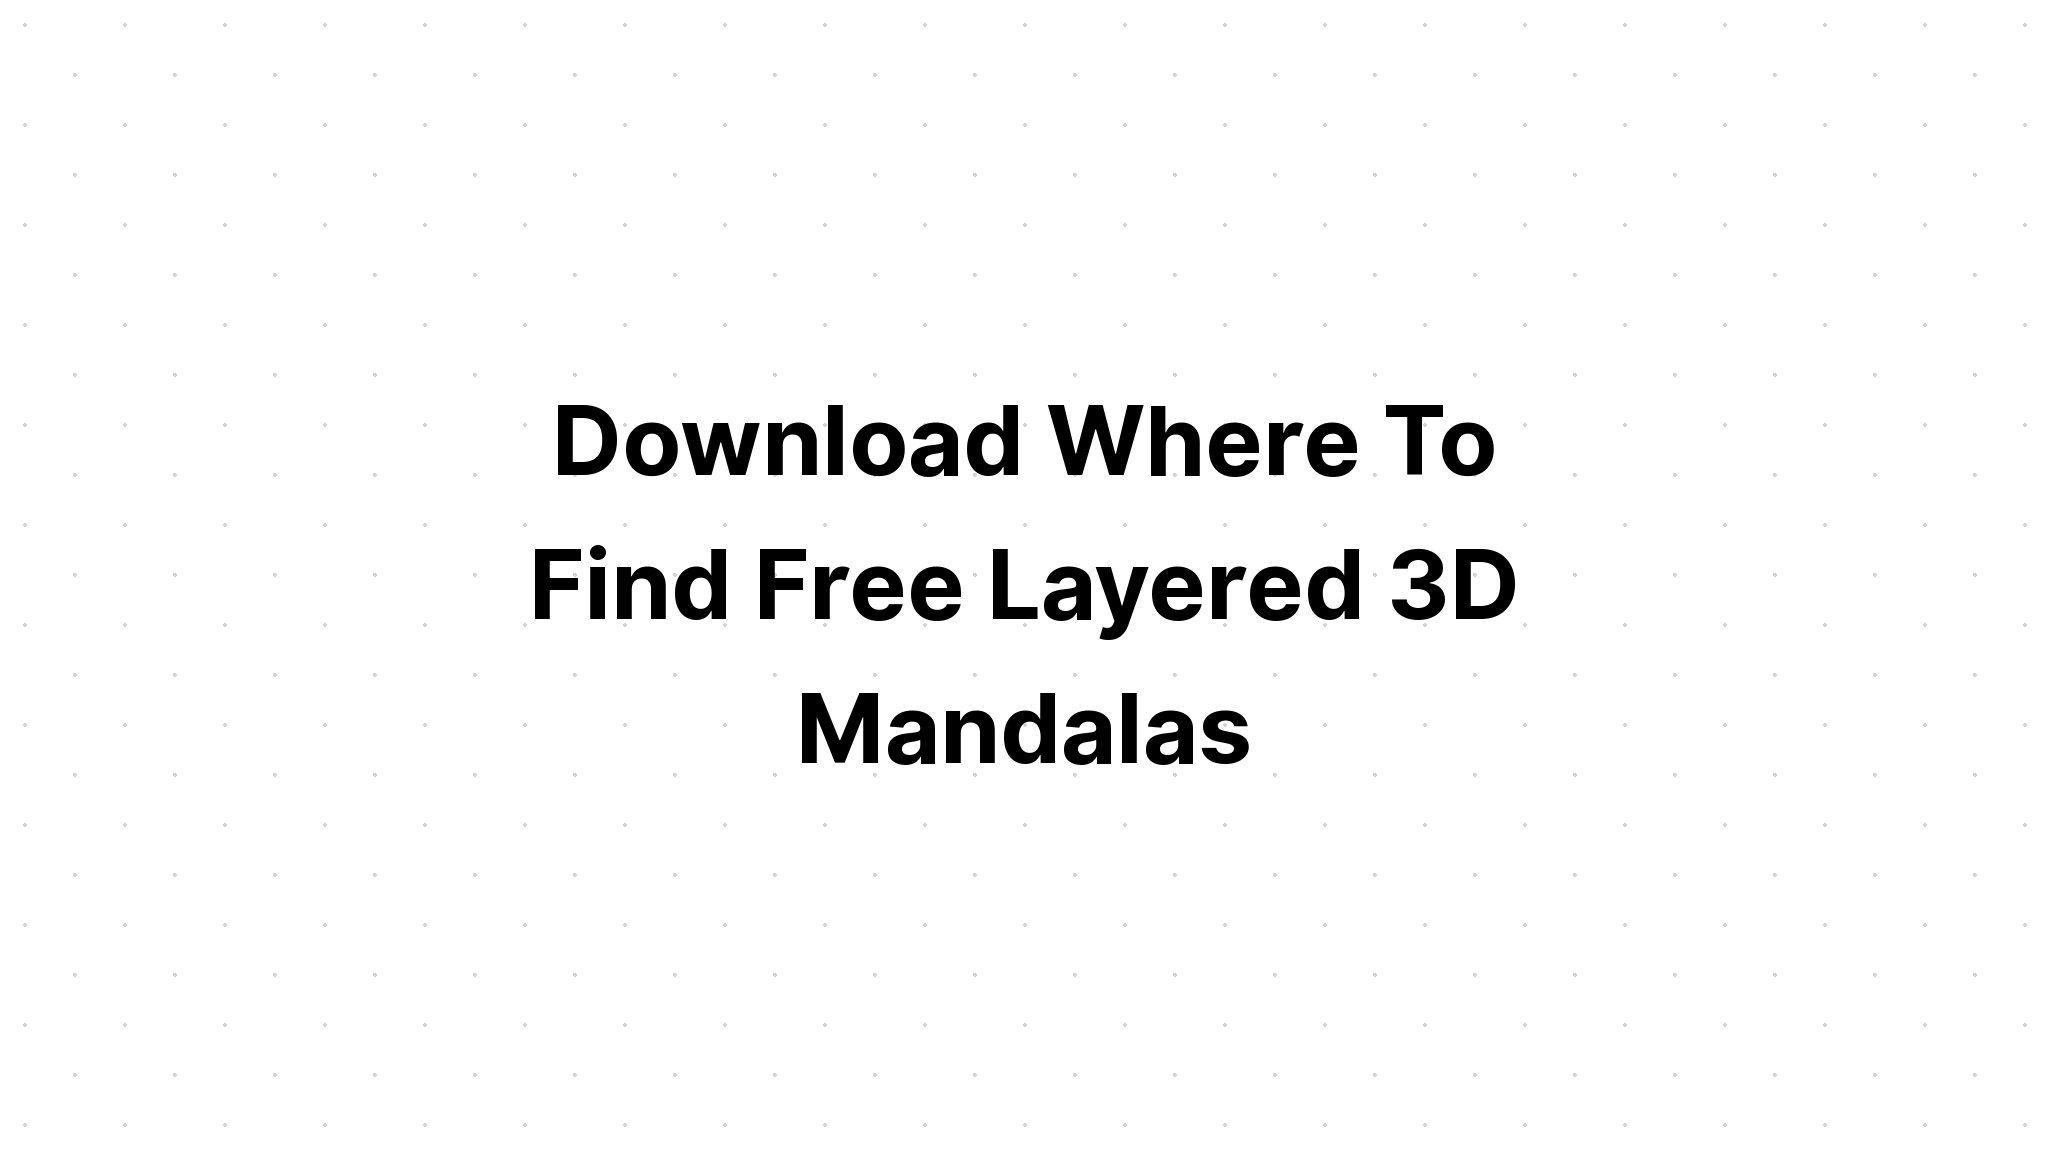 Download Free Layered Layered Svg - Layered SVG Cut File